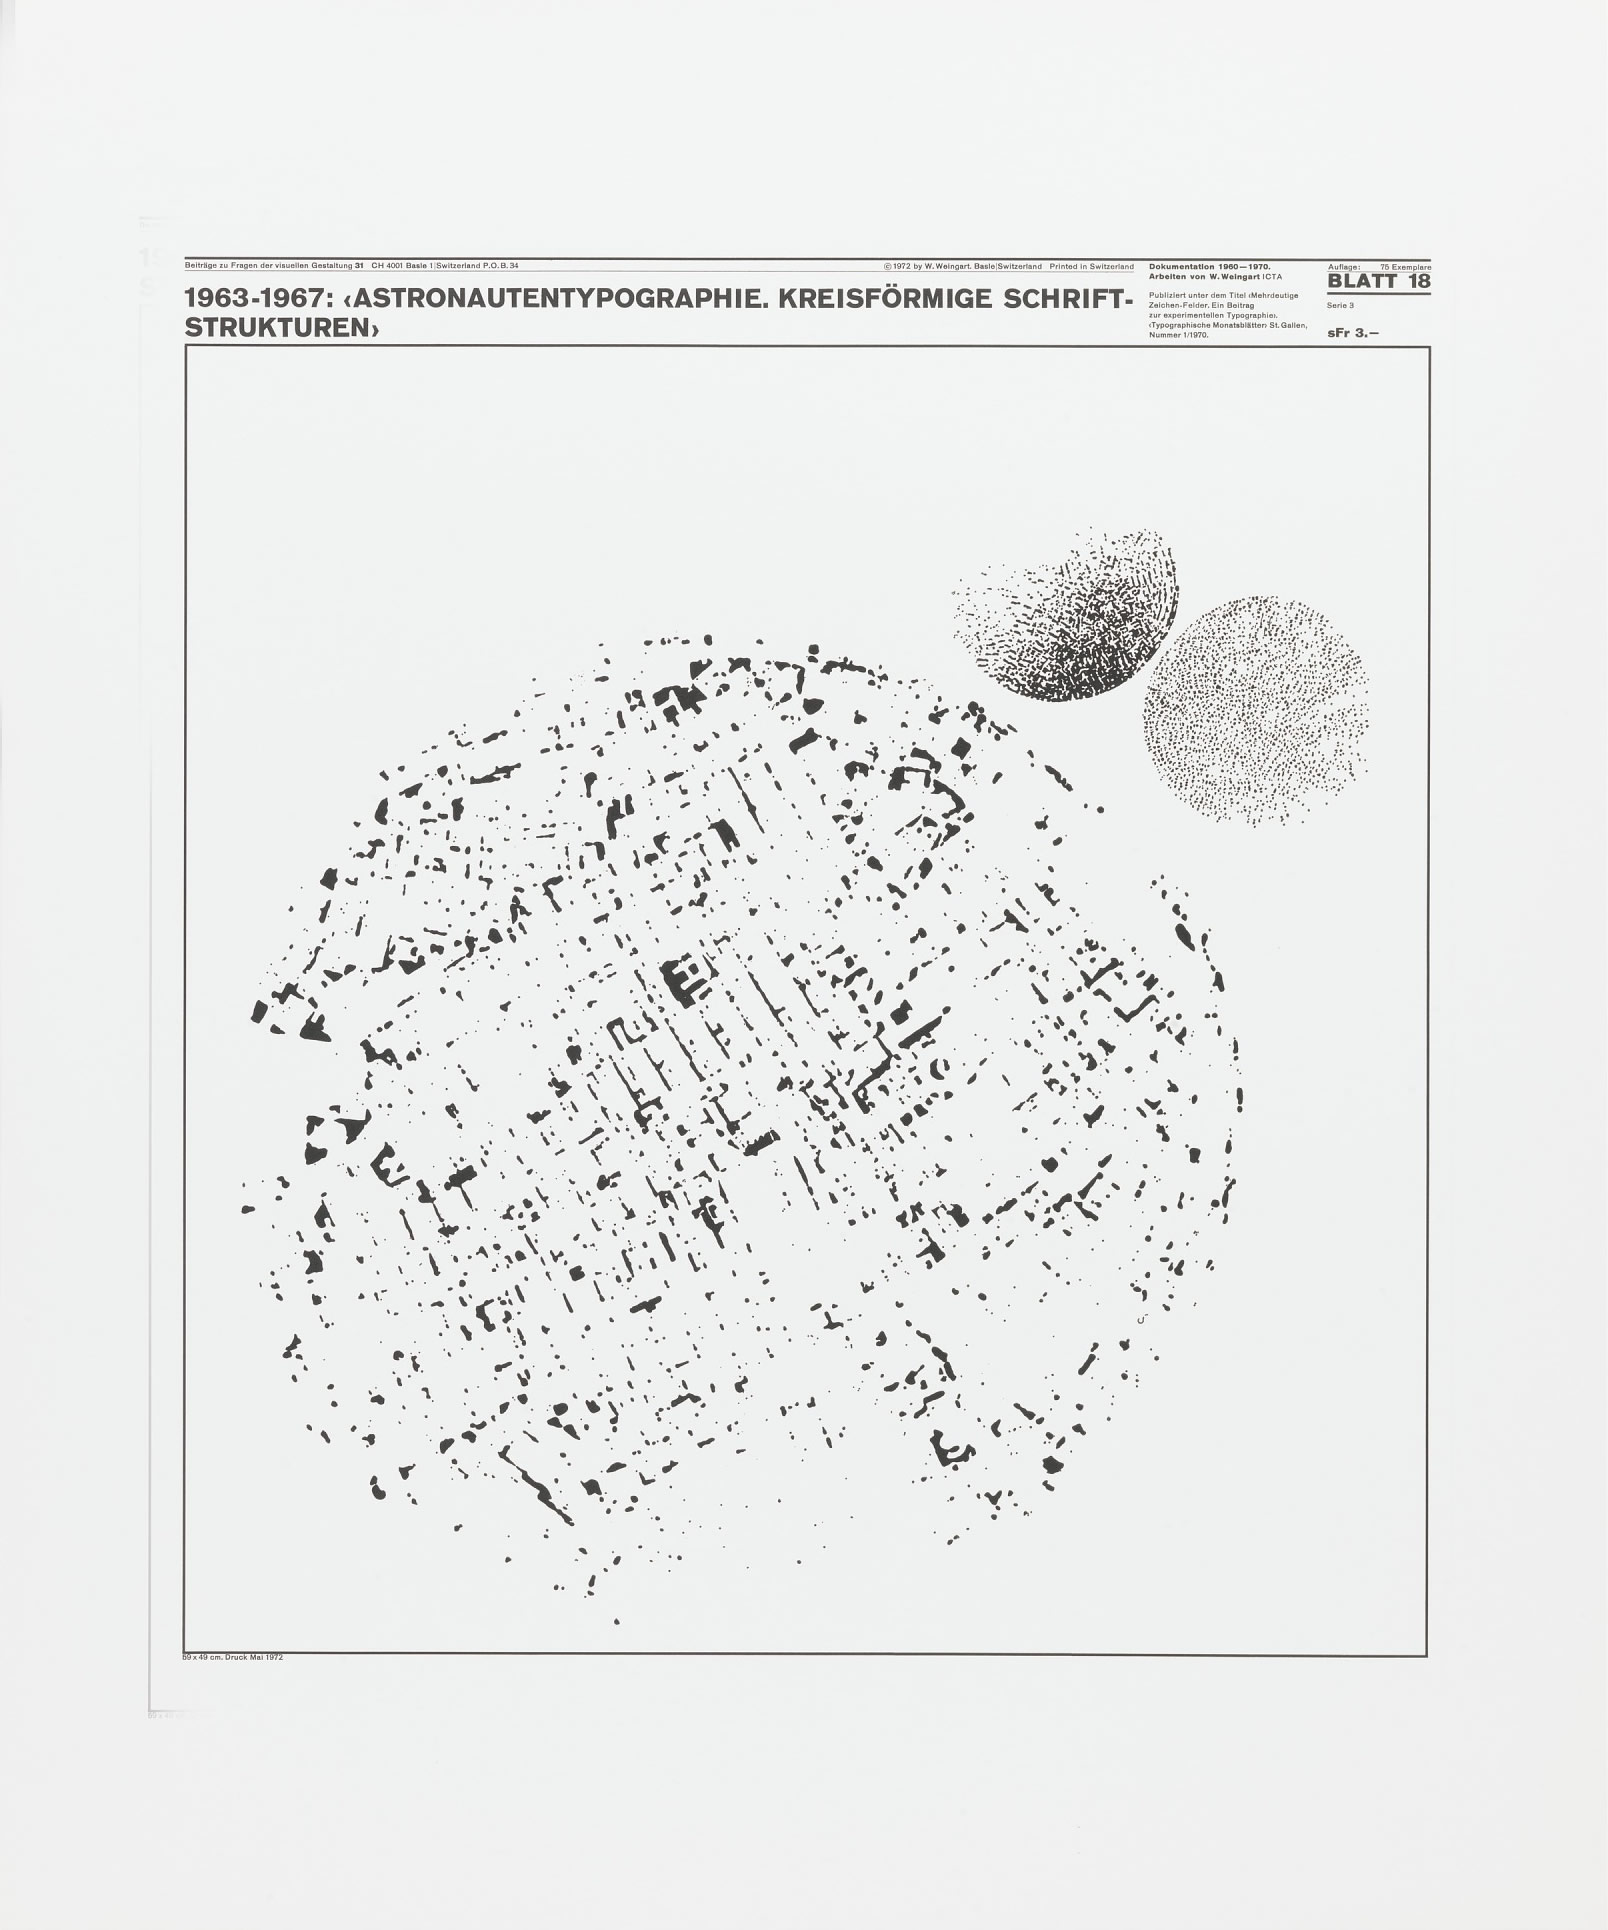 Wolfgang Weingart: Beiträge zu Fragen der visuellen Gestaltung 31, Blatt 18 from the portfolio Dokumentation 1960—1970, Arbeiten von W. Weingart, Designed 1963-67. Lithograph. (58.9 x 49 cm)